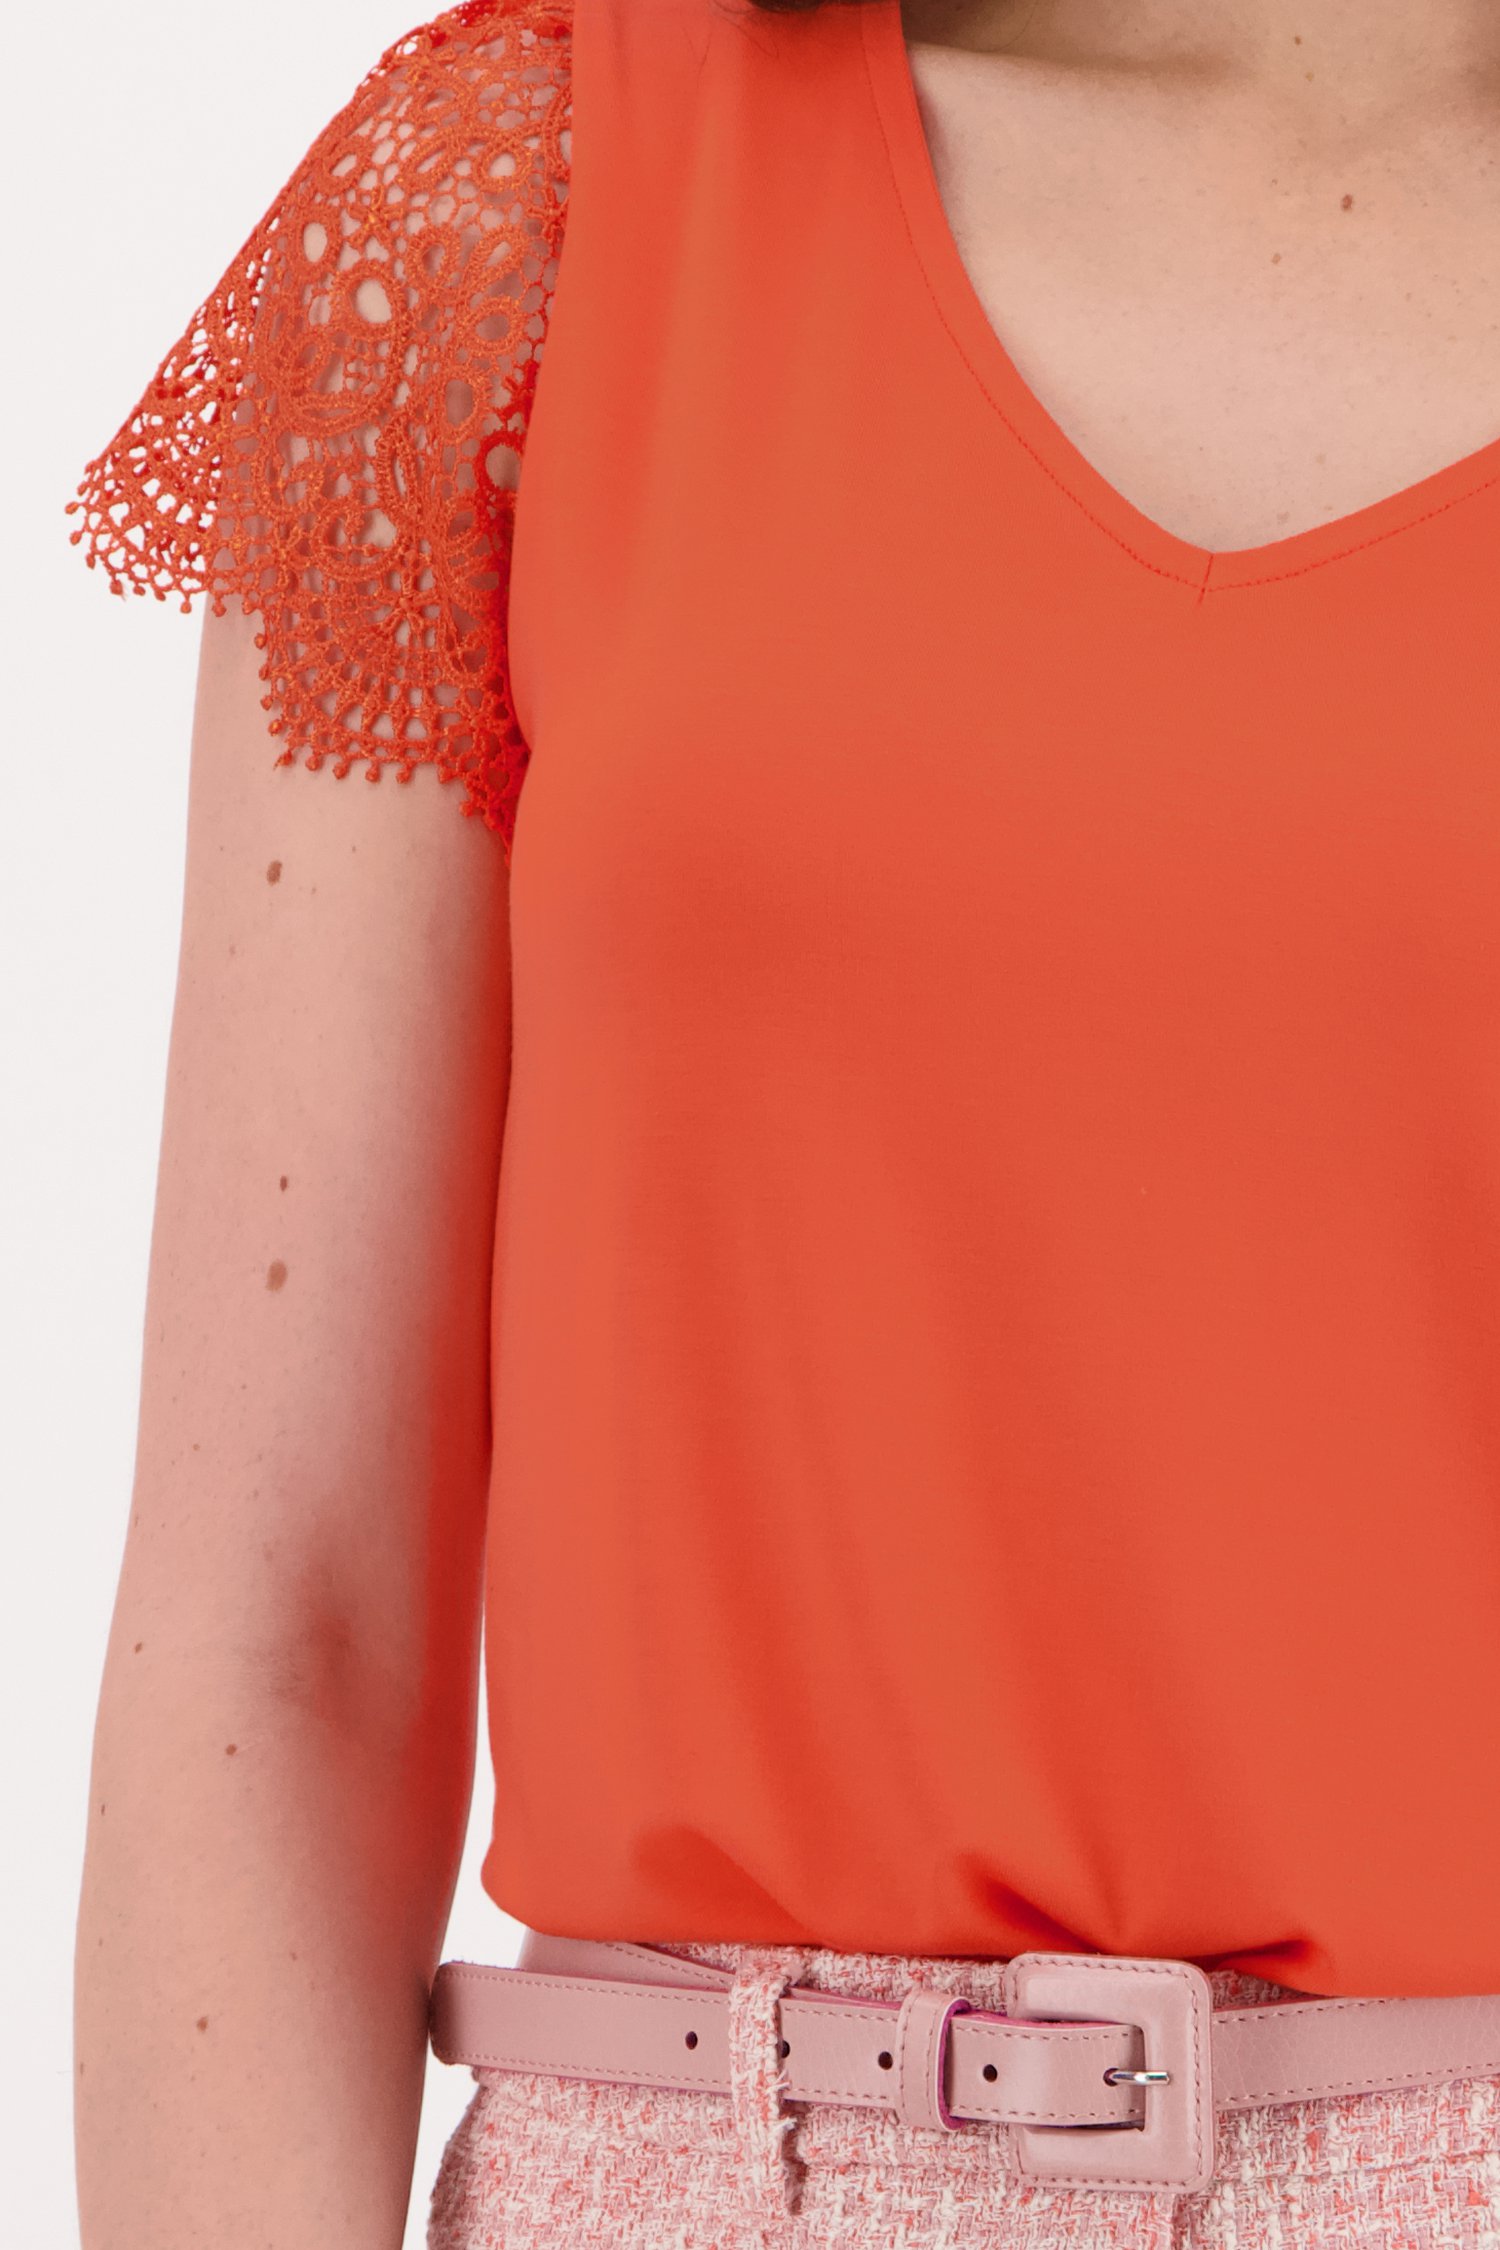 Oranje-rode blouse met korte kapmouwtjes van D'Auvry voor Dames